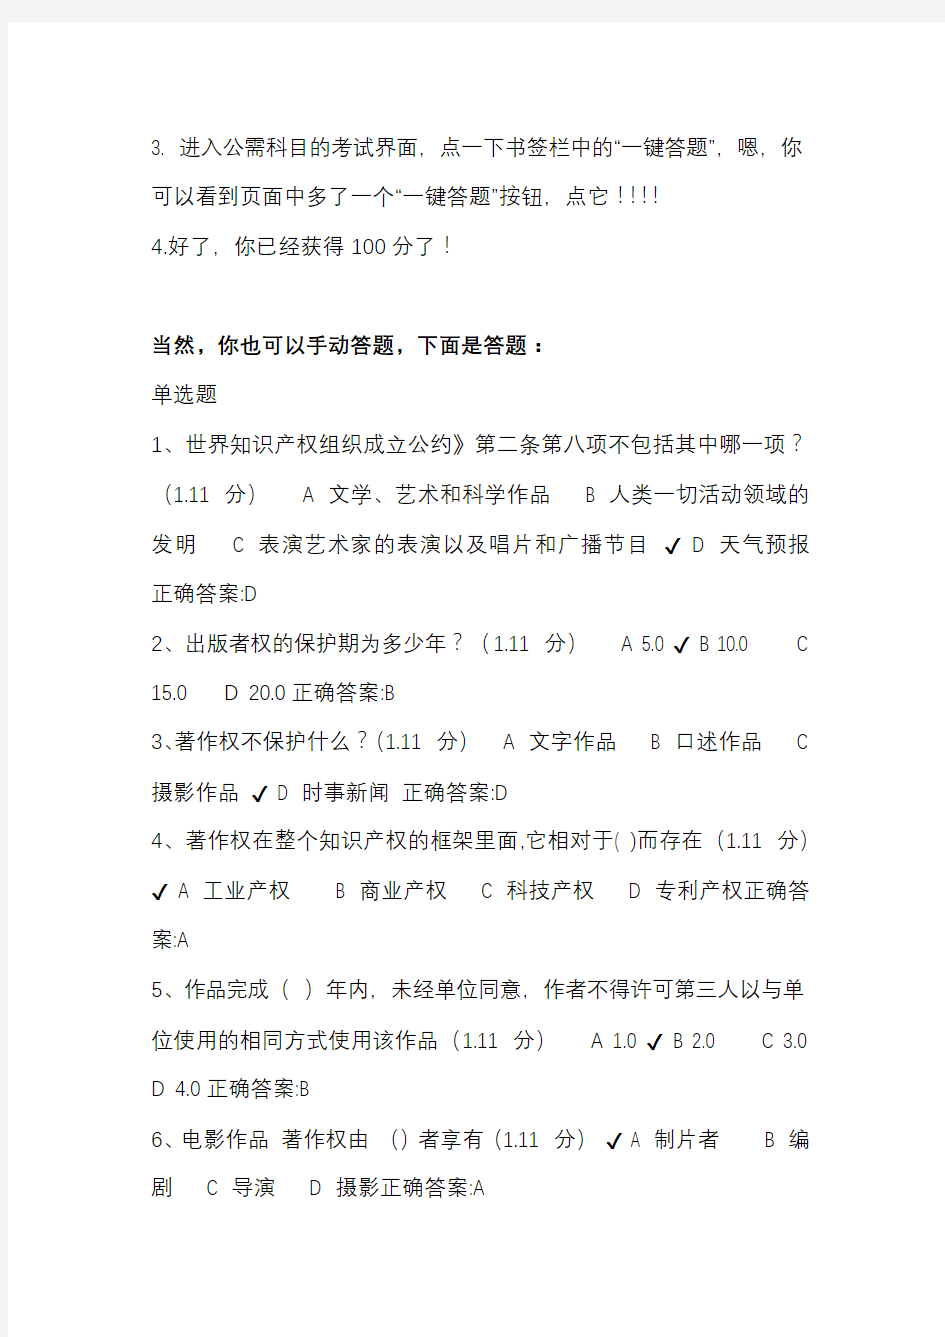 2018重庆公需科目一键学习、一键考试,另附答案